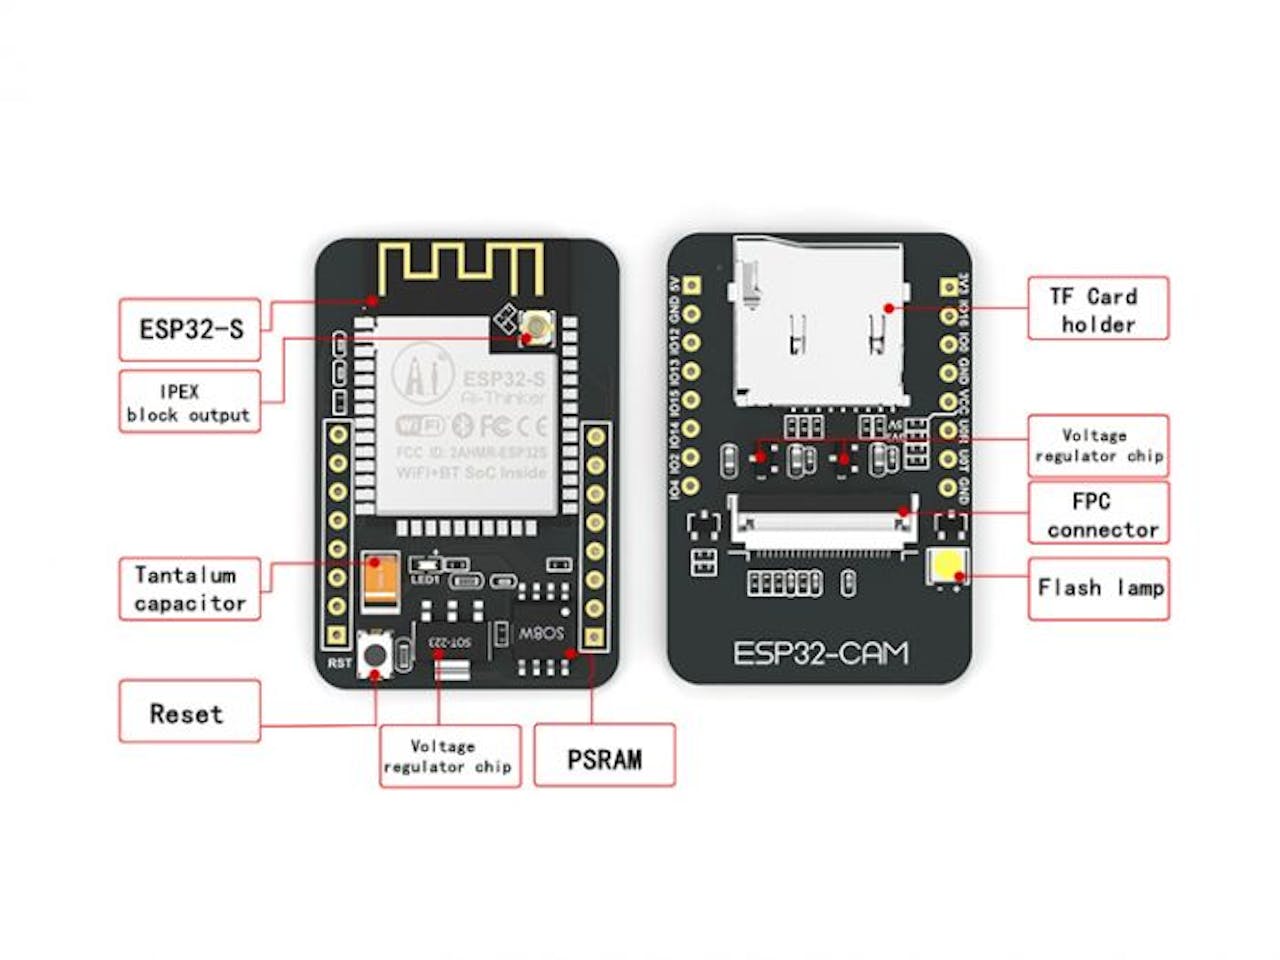 Surveillance RoboCar based on ESP32 CAM Module – QuartzComponents